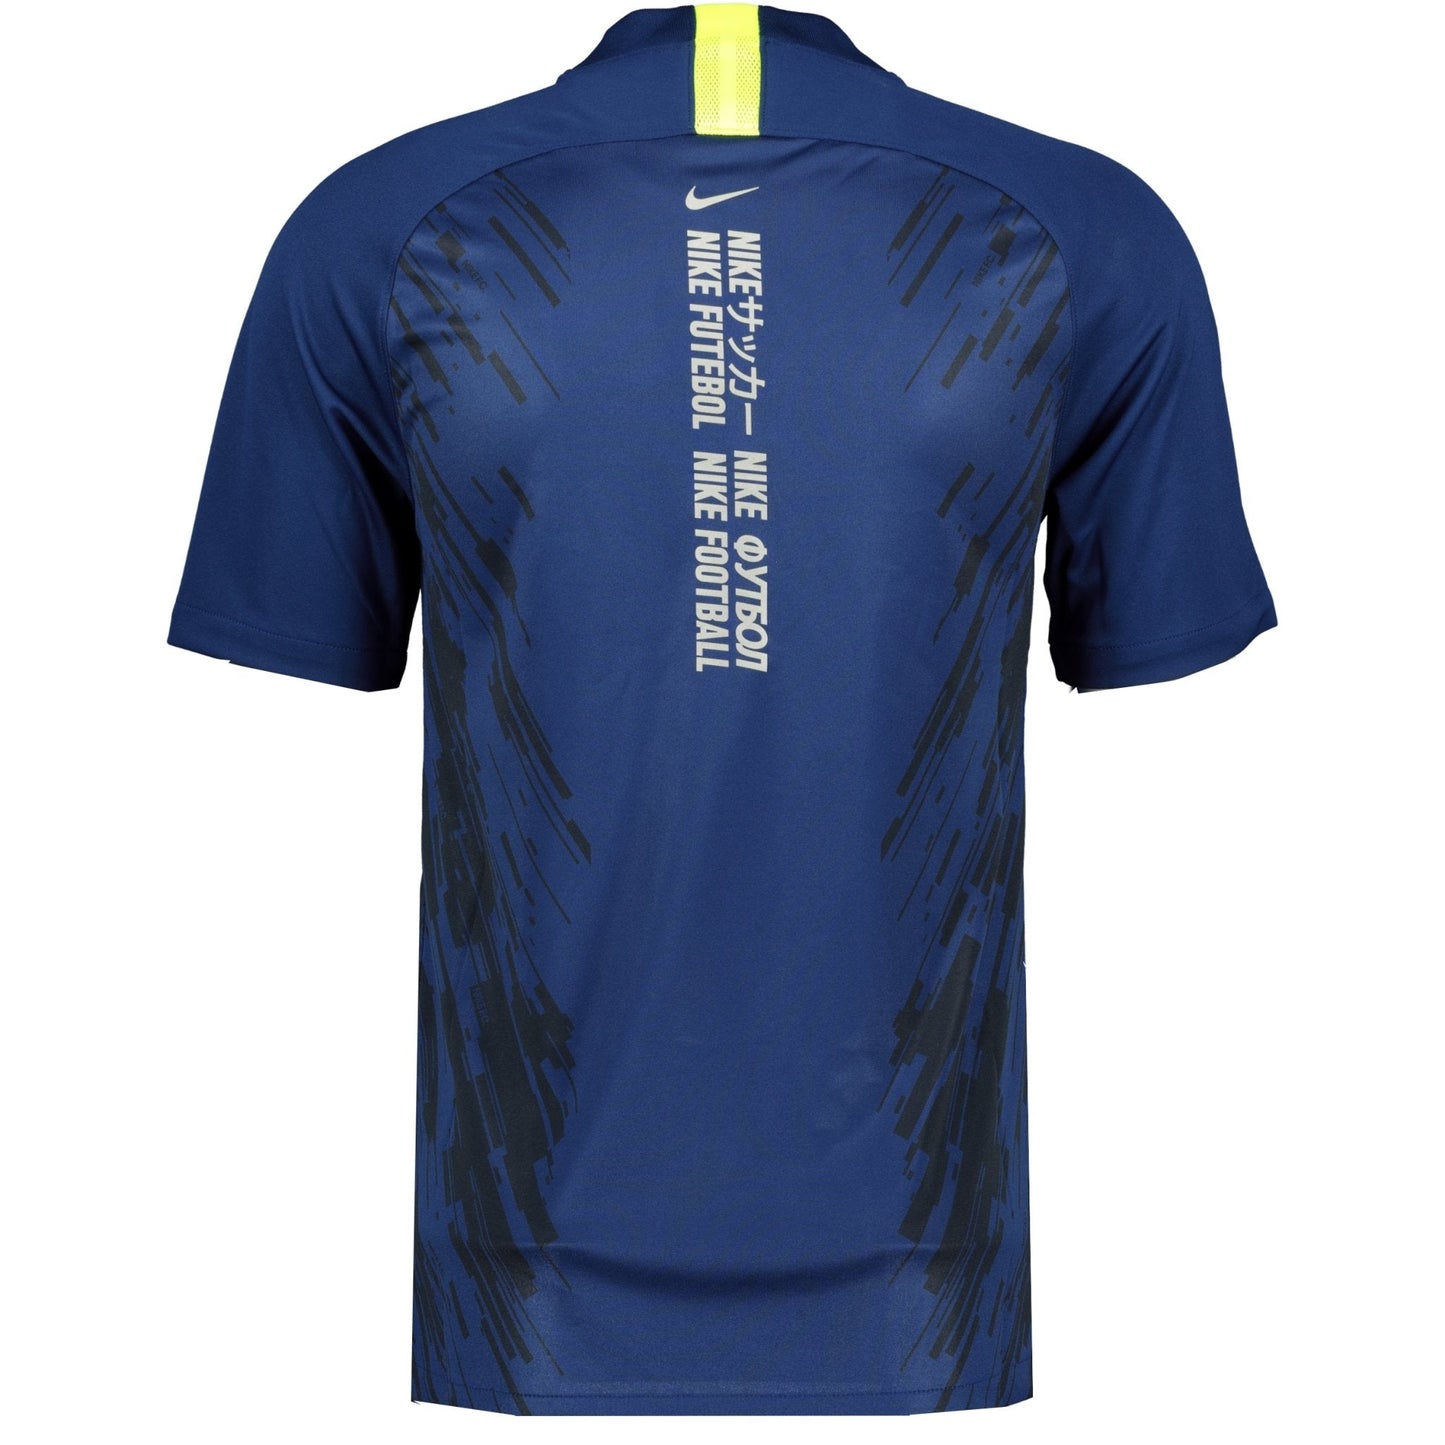 Nike Dri-Fit Nike FC T-Shirt Navy - LinkFashionco